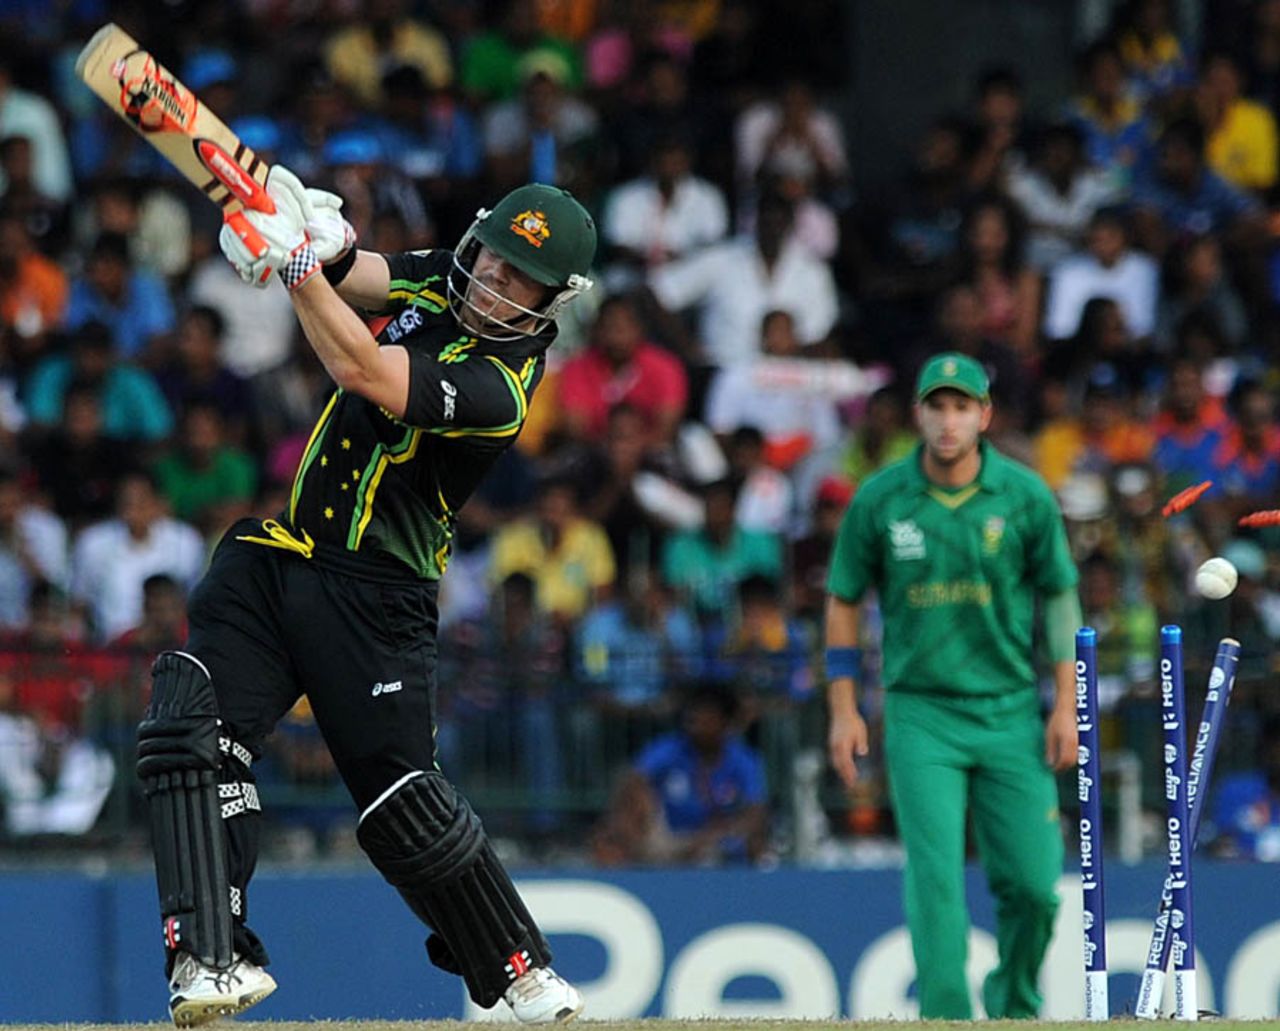 David Warner was bowled for 5, Australia v South Africa, Super Eights, World Twenty20, Colombo, September 30, 2012